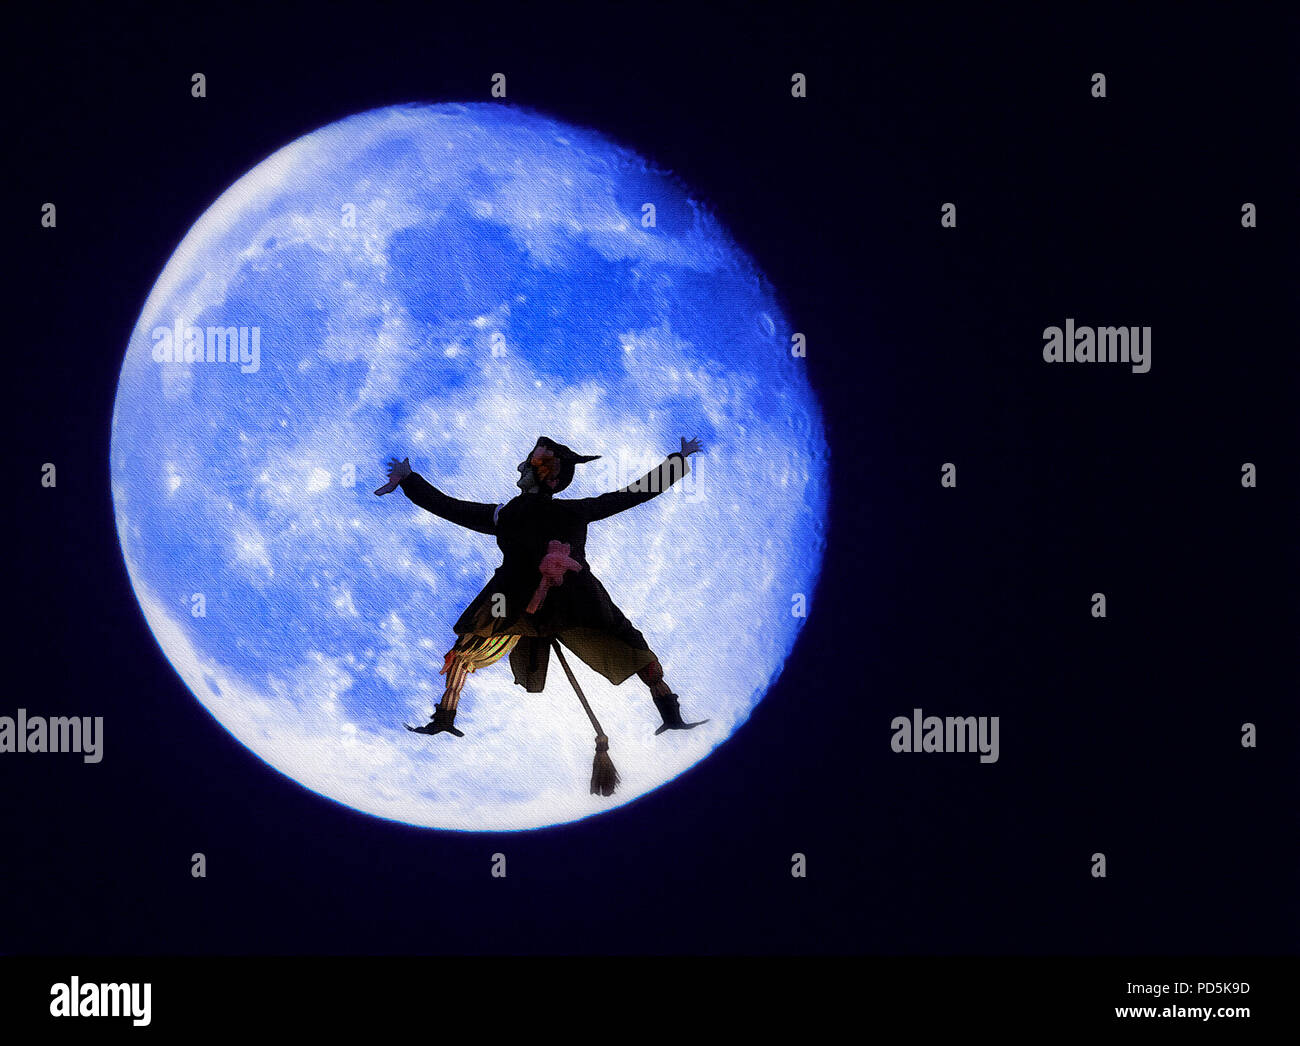 Una immagine composita per la festa di Halloween, costituito da un blu harvest moon con un inaspettato visitatore intonacate al suo volto. Questa strega era di fretta e ca Foto Stock